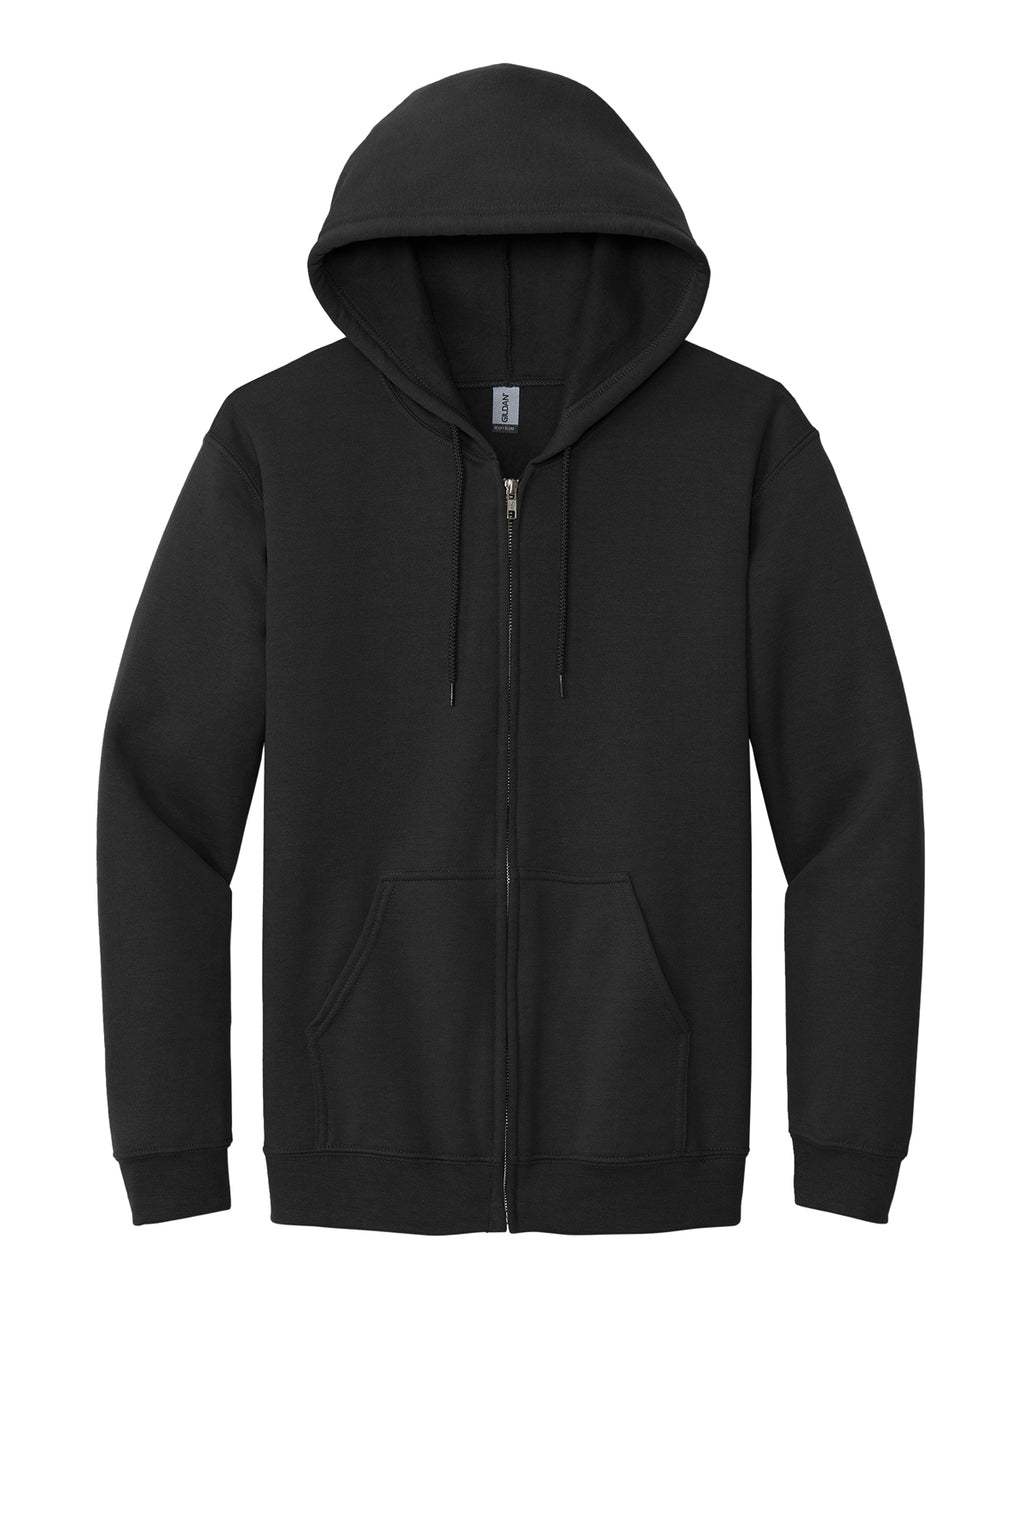 Gildan Full-Zip Hooded Sweatshirt Mens/Unisex Hoodies Black